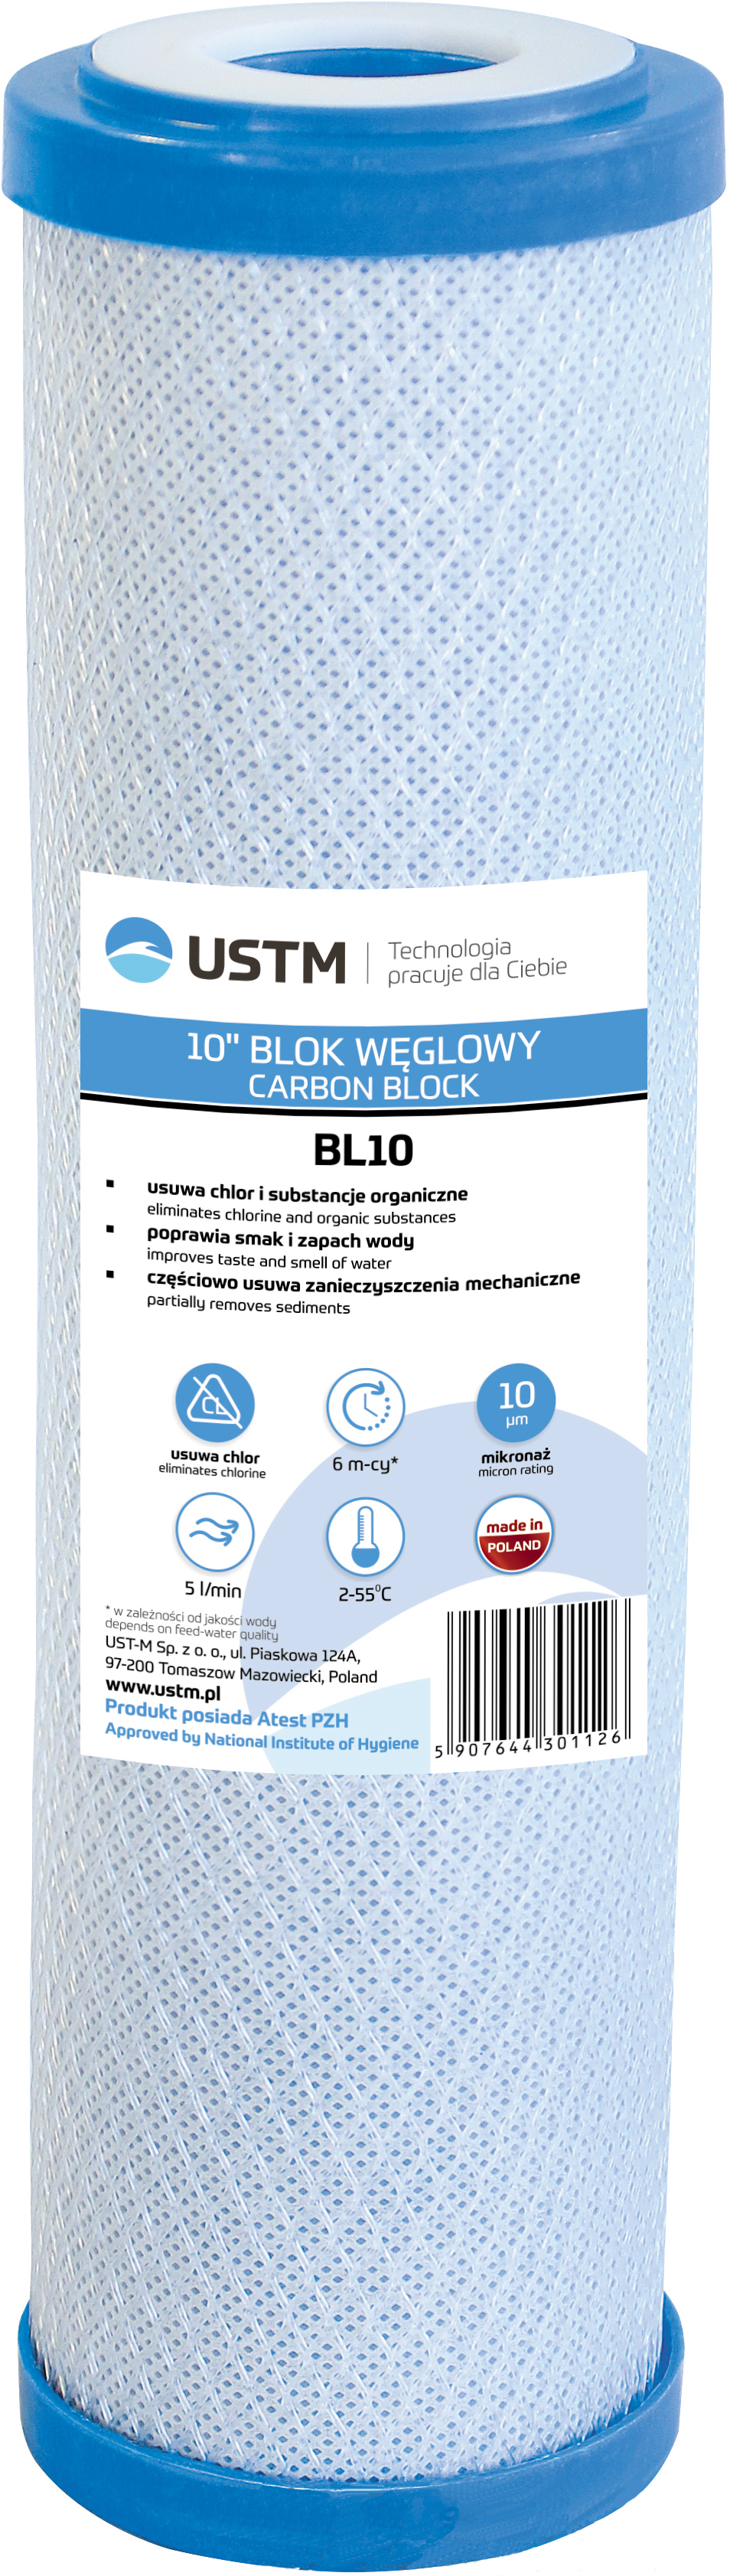 Відгуки картридж для фільтра USTM BL10 в Україні